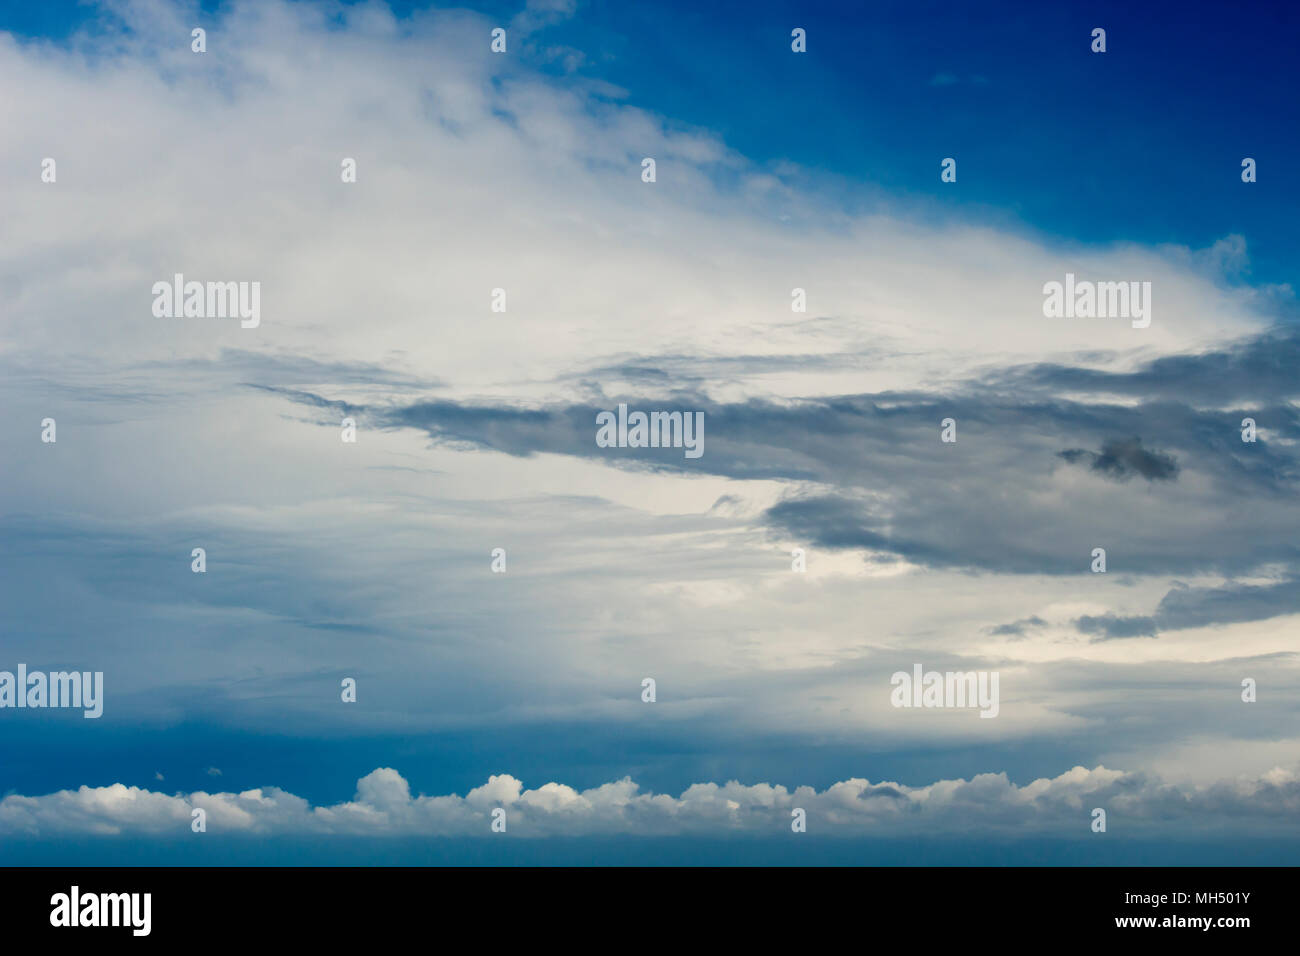 Grau Weiß wispy Cirrus und cirrostratus Wolken im azurblauen australischen Himmel eine dezente Hintergrund oder Tapete Effekt erzeugen. Stockfoto